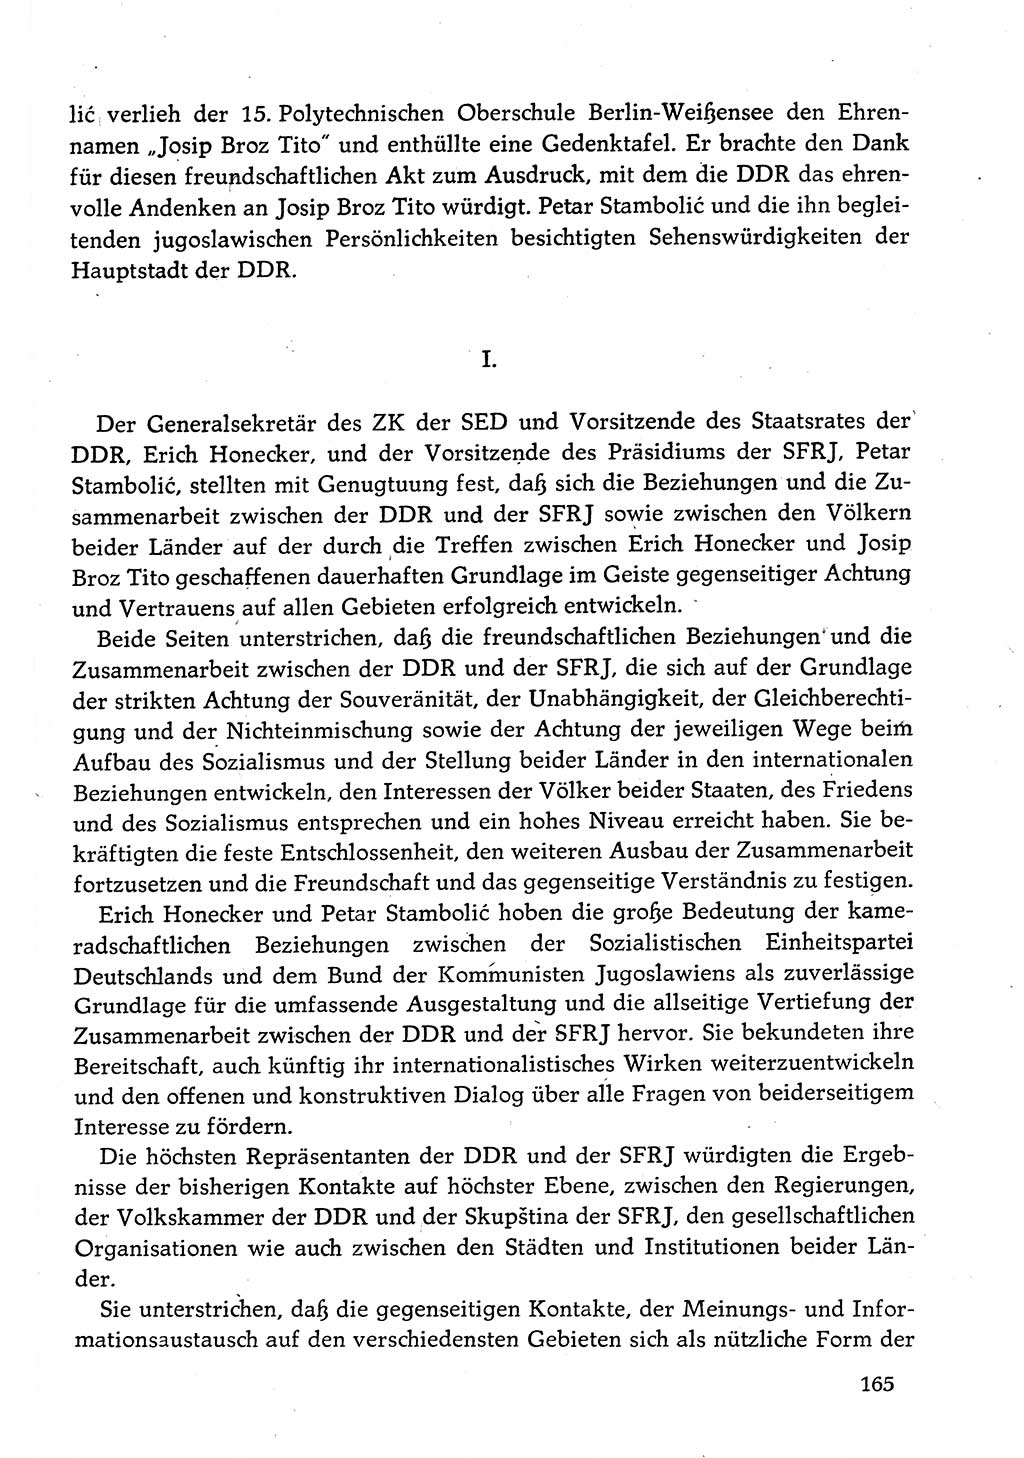 Dokumente der Sozialistischen Einheitspartei Deutschlands (SED) [Deutsche Demokratische Republik (DDR)] 1982-1983, Seite 165 (Dok. SED DDR 1982-1983, S. 165)